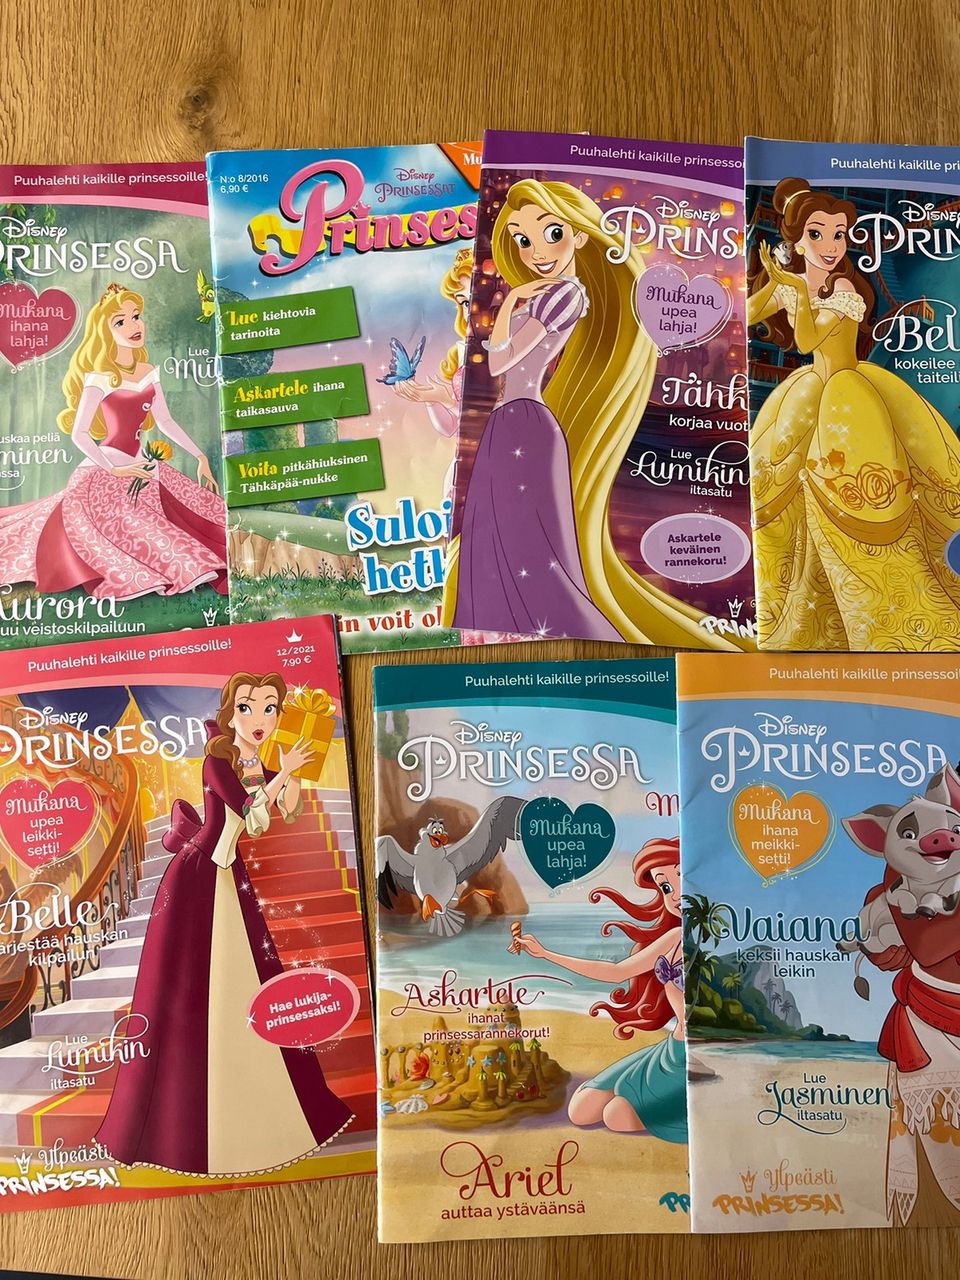 Prinsessa-lehtiä ja Frozen-lehtiä